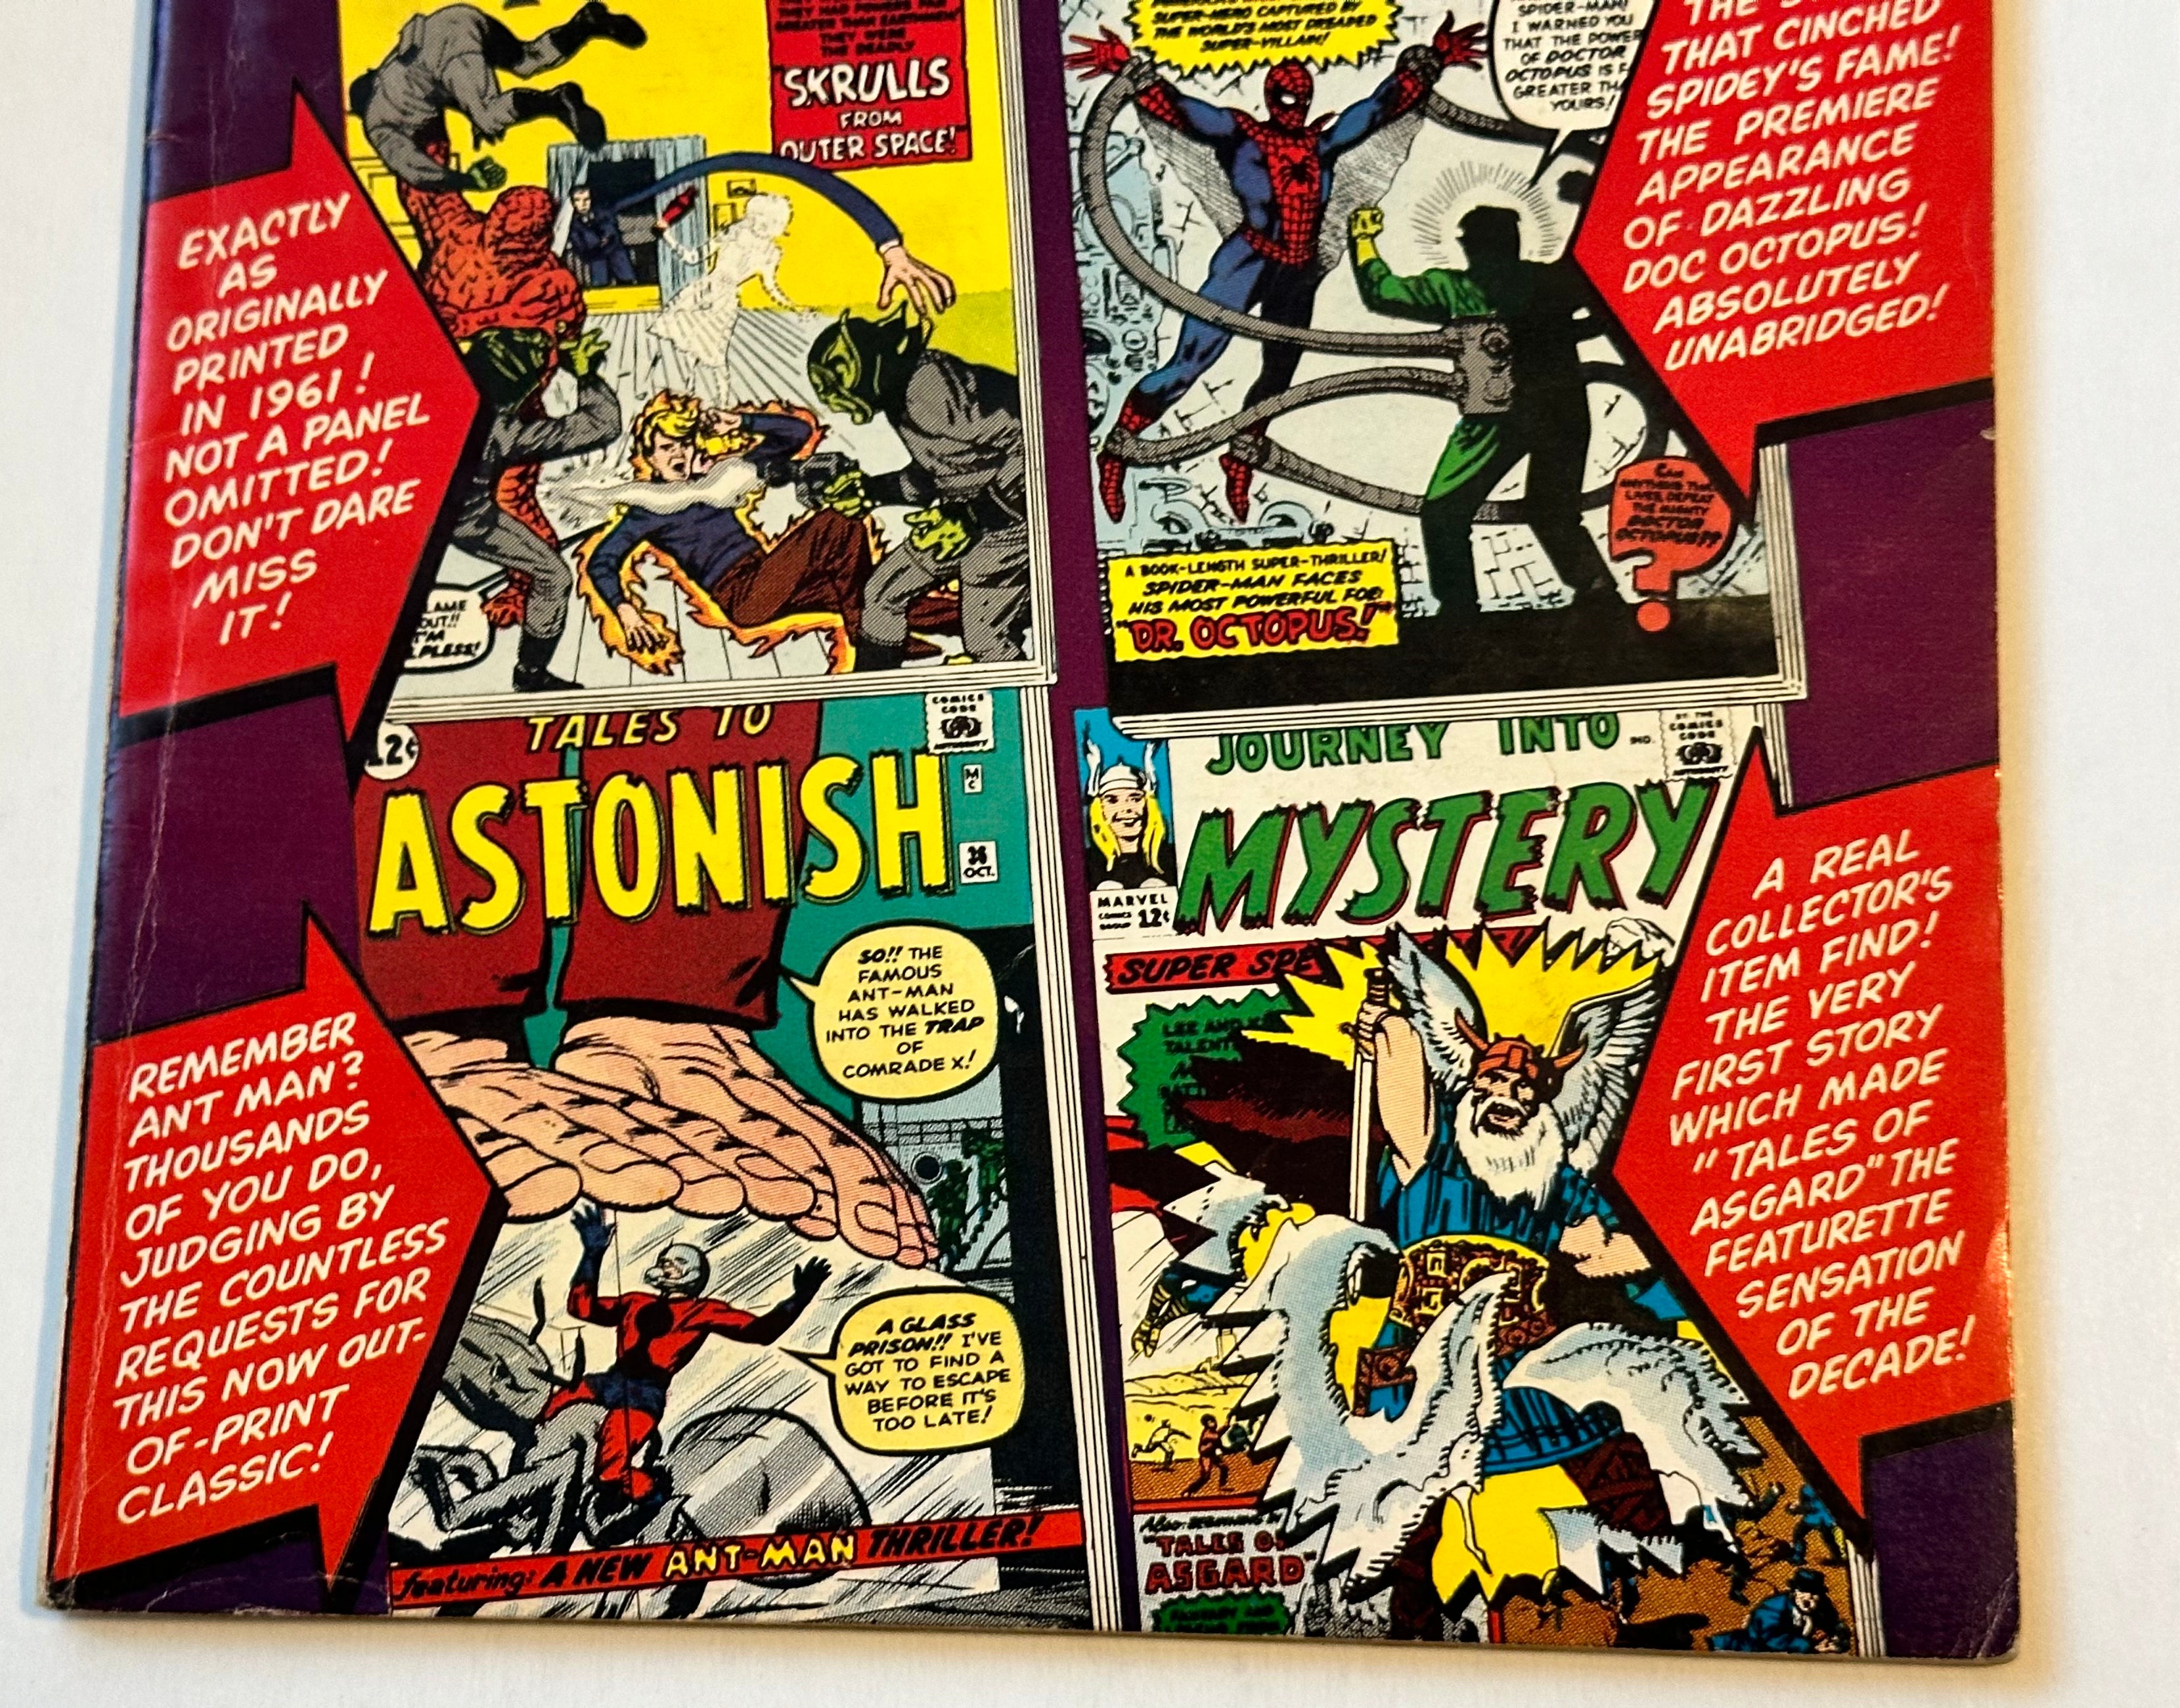 Marvel collectors items classic #1 comic book 1965